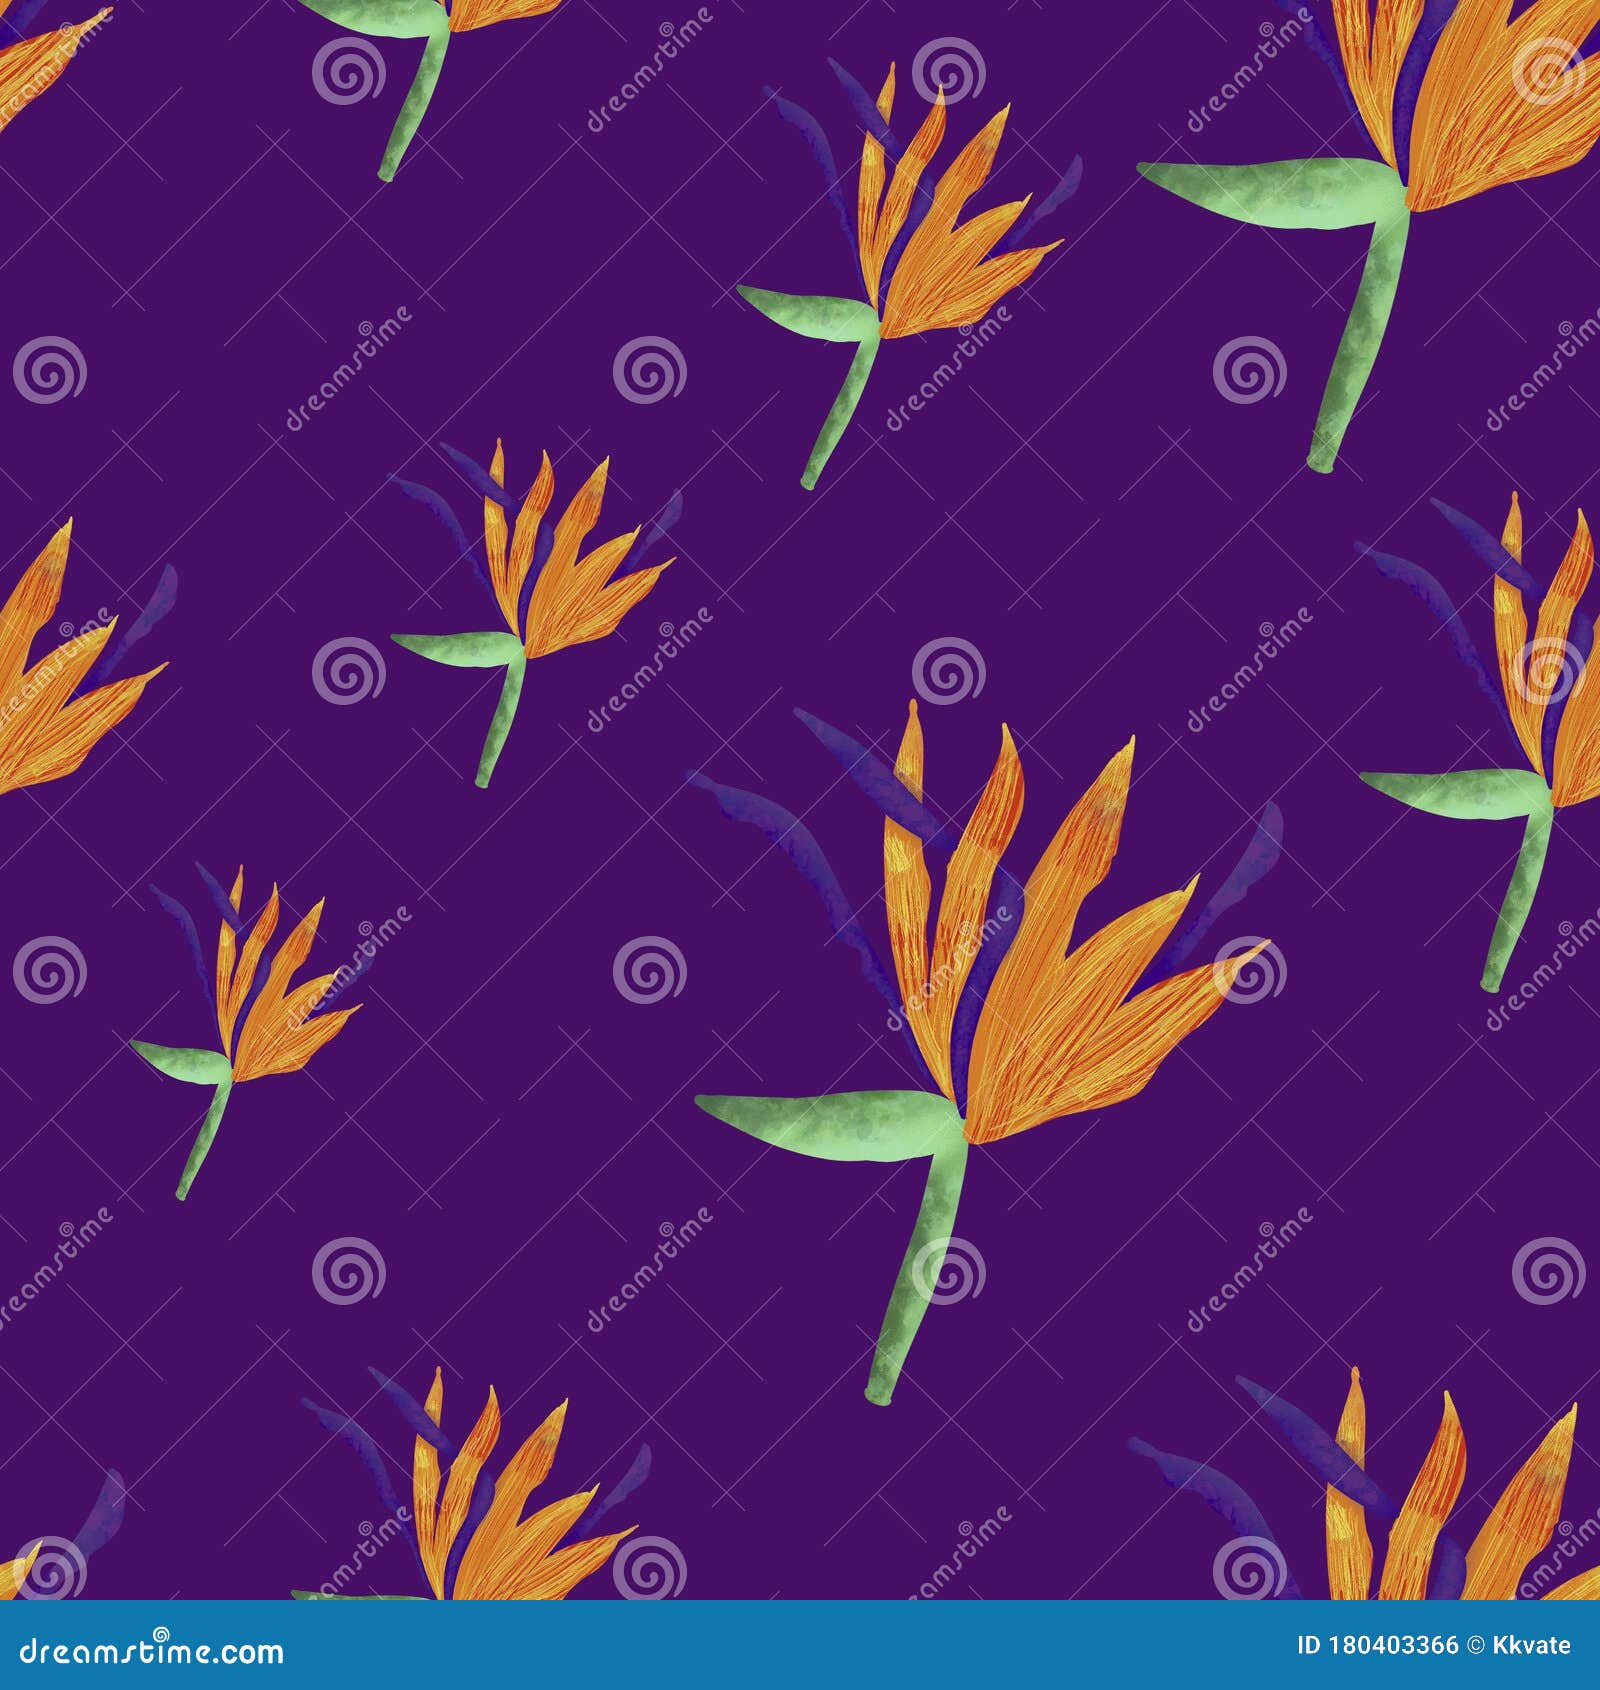 紫色背景中的热带橙花枫杨花夏季无缝模式打印 包装 壁纸 纺织品设计库存例证 插画包括有紫色背景中的热带橙花枫杨花 打印 包装 壁纸 纺织品设计